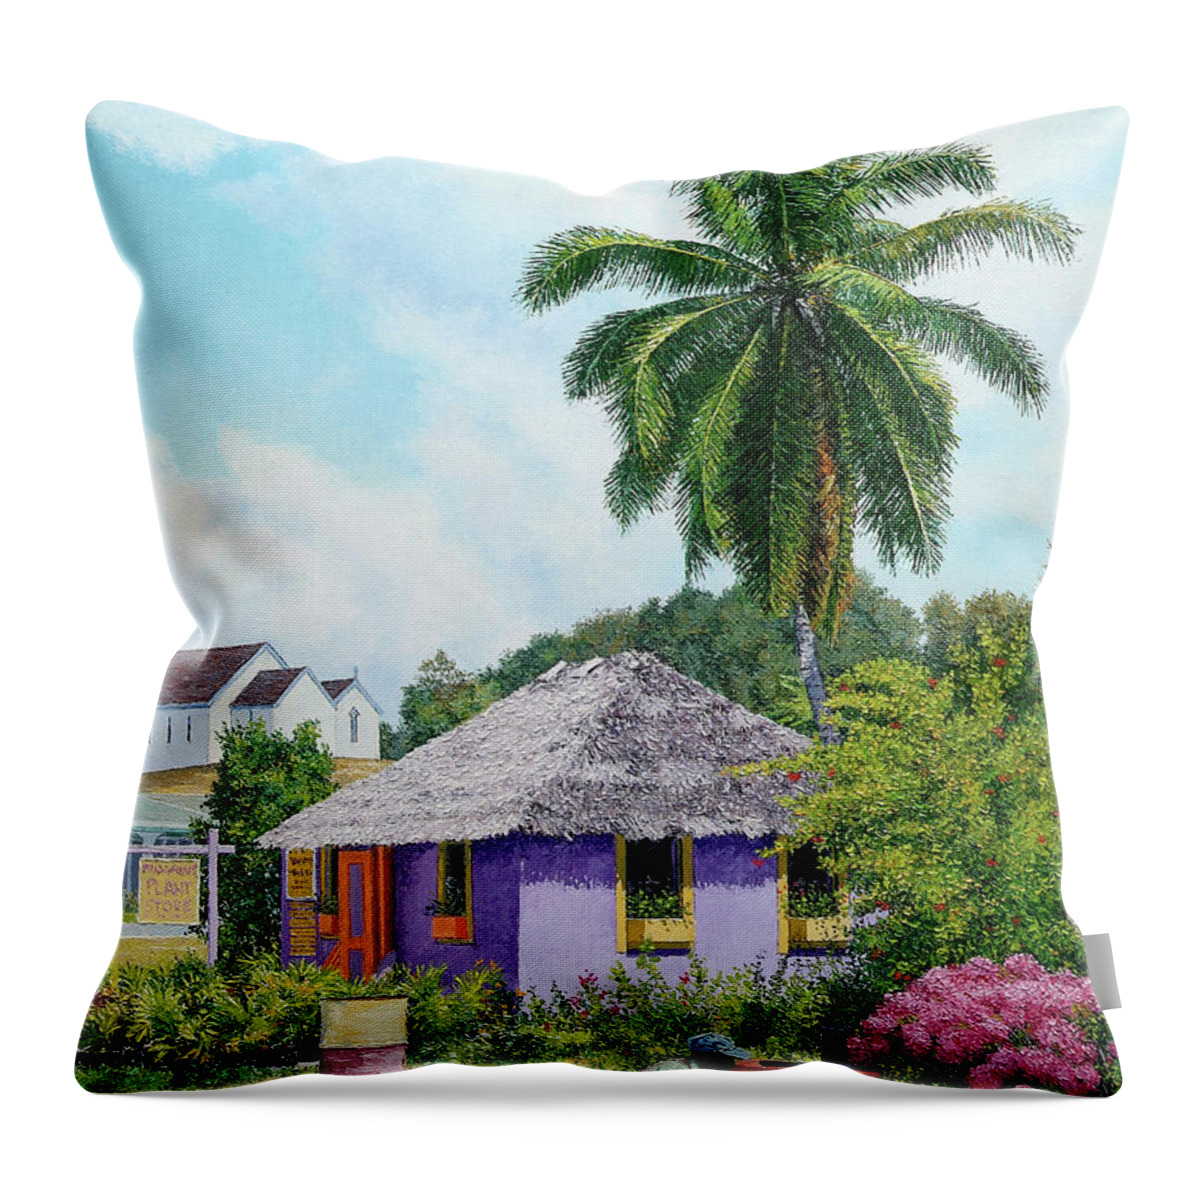 Eddie Throw Pillow featuring the painting Gardener Hut by Eddie Minnis